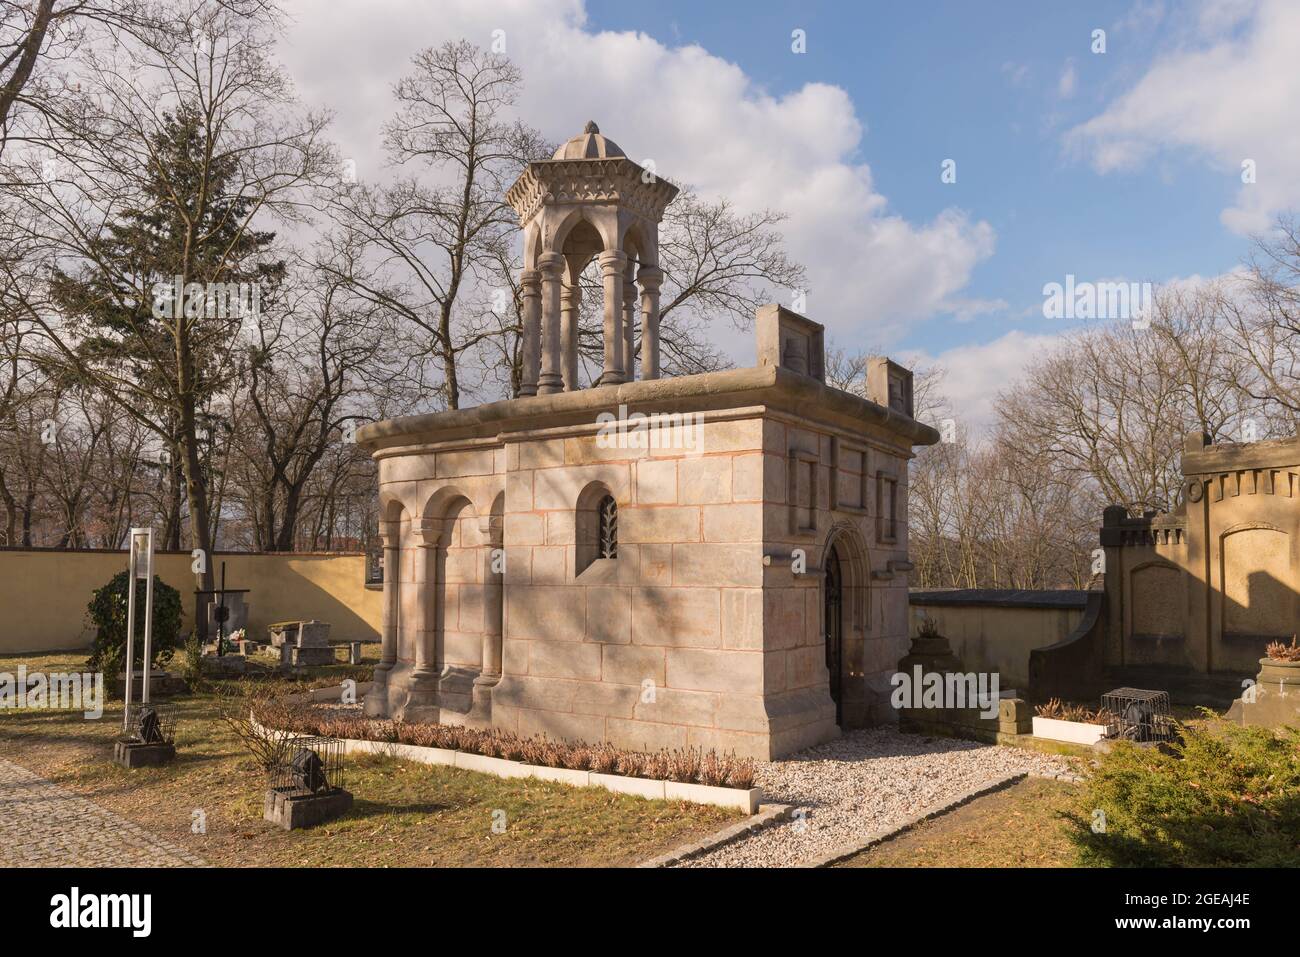 Una replica della Cappella del Santo Sepolcro da Gerusalemme, situata nella città di Zagan, Polonia. Foto Stock